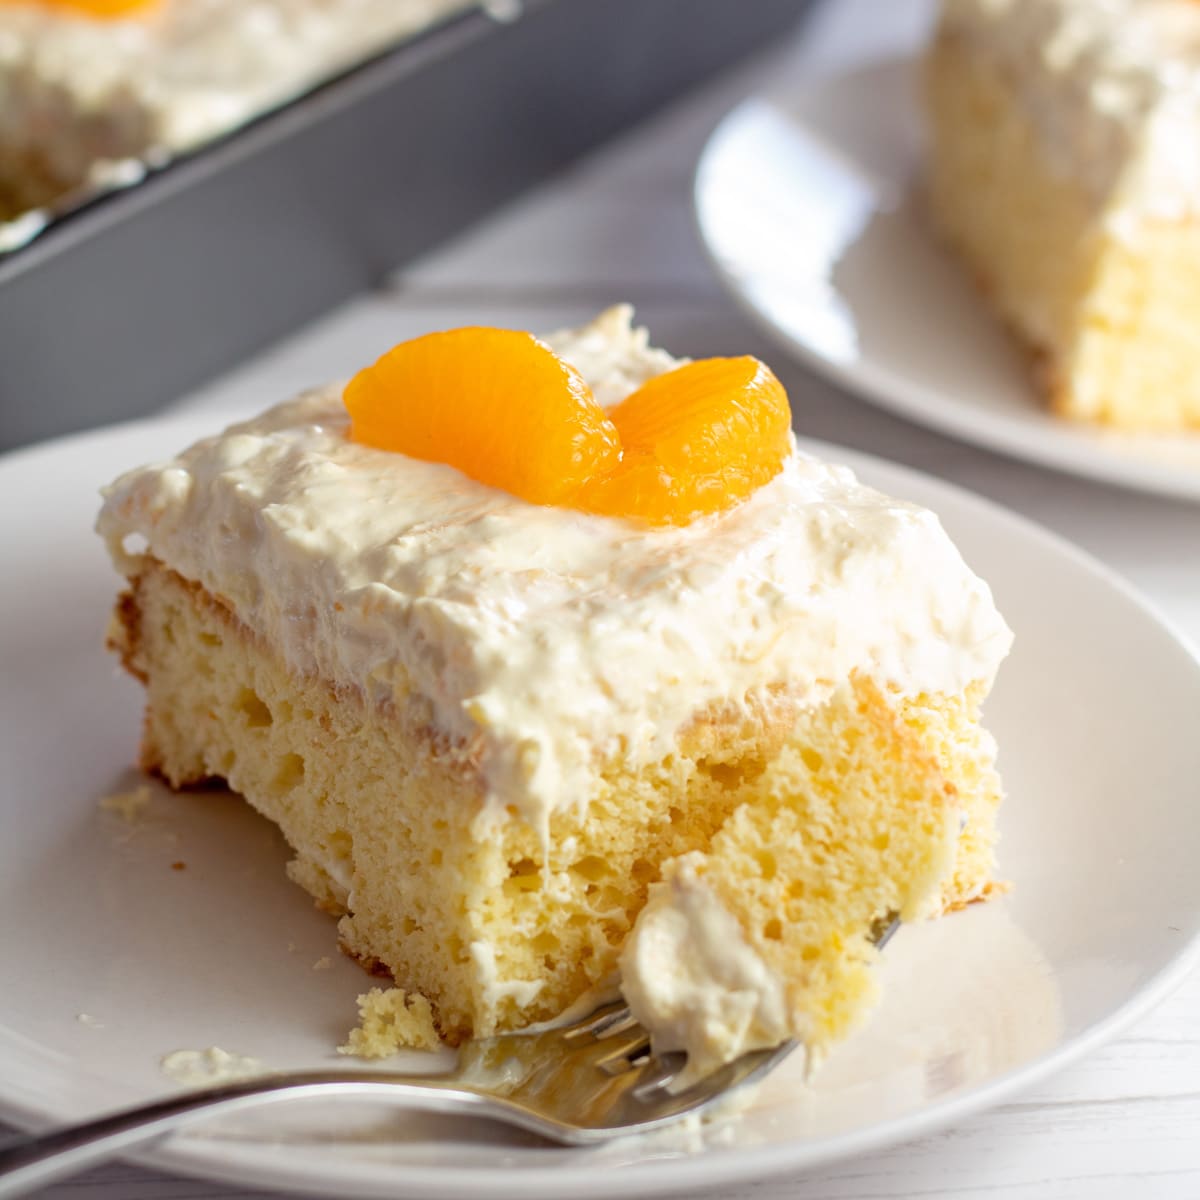 Gambar persegi irisan kue jeruk mandarin di piring putih.